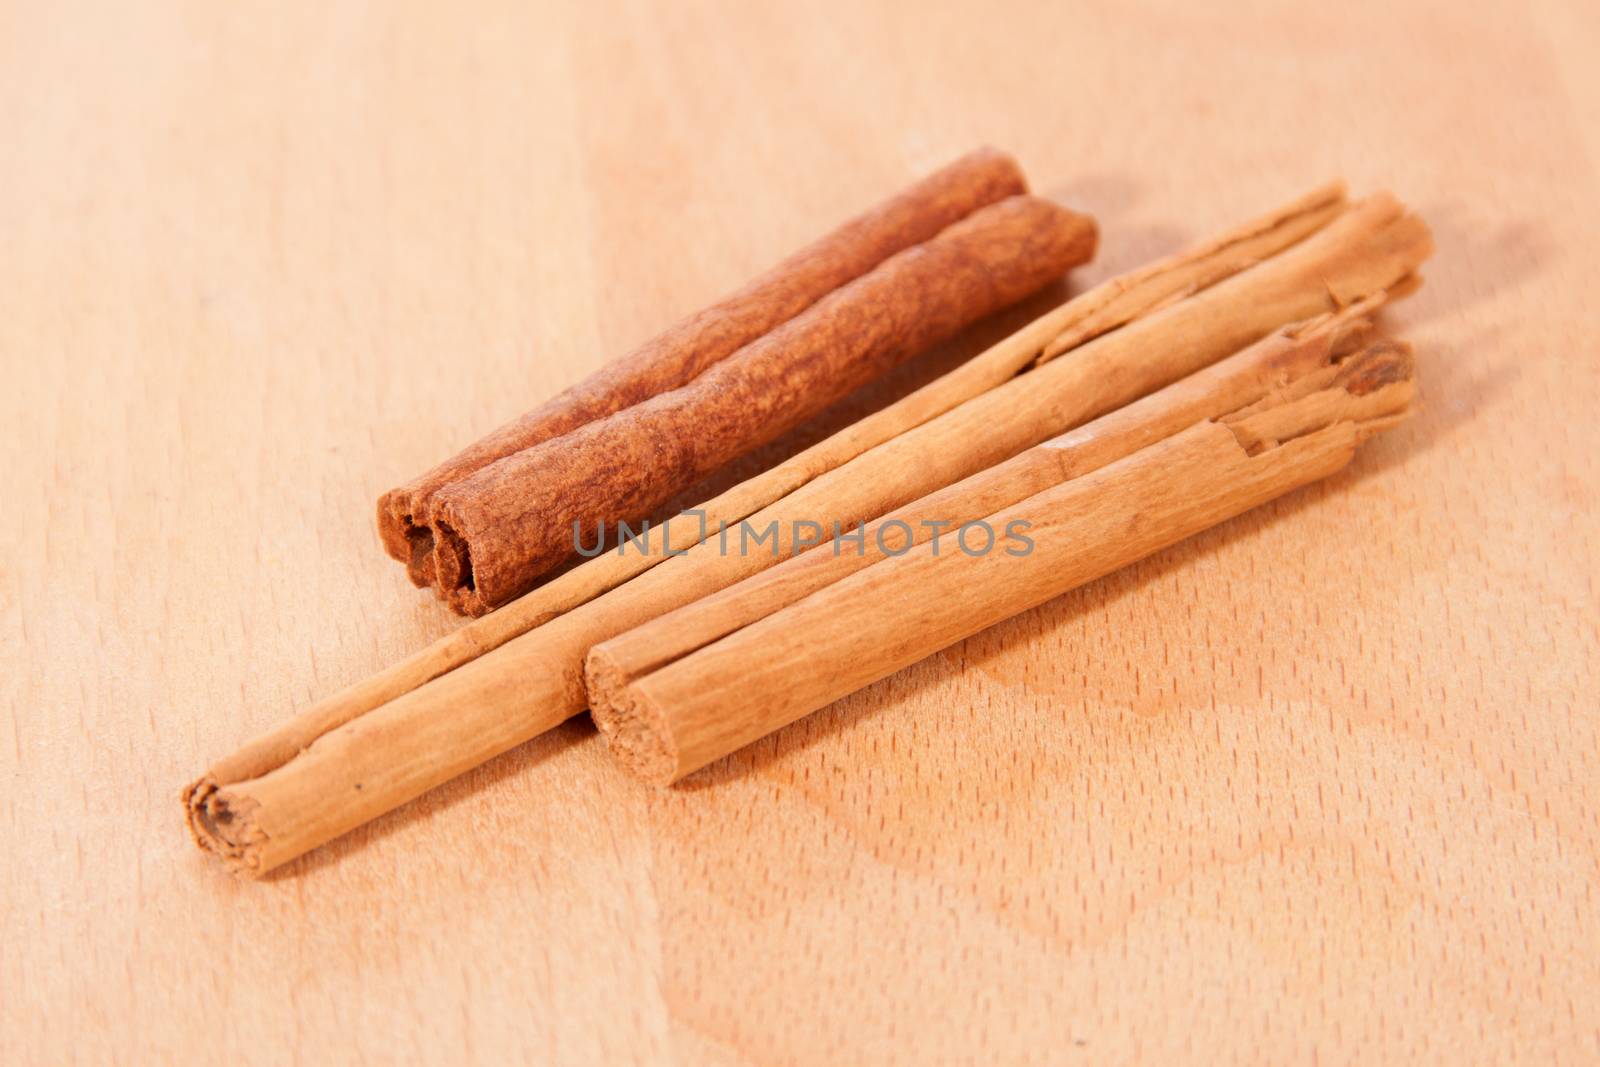 Cinnamon bark on a wooden table top